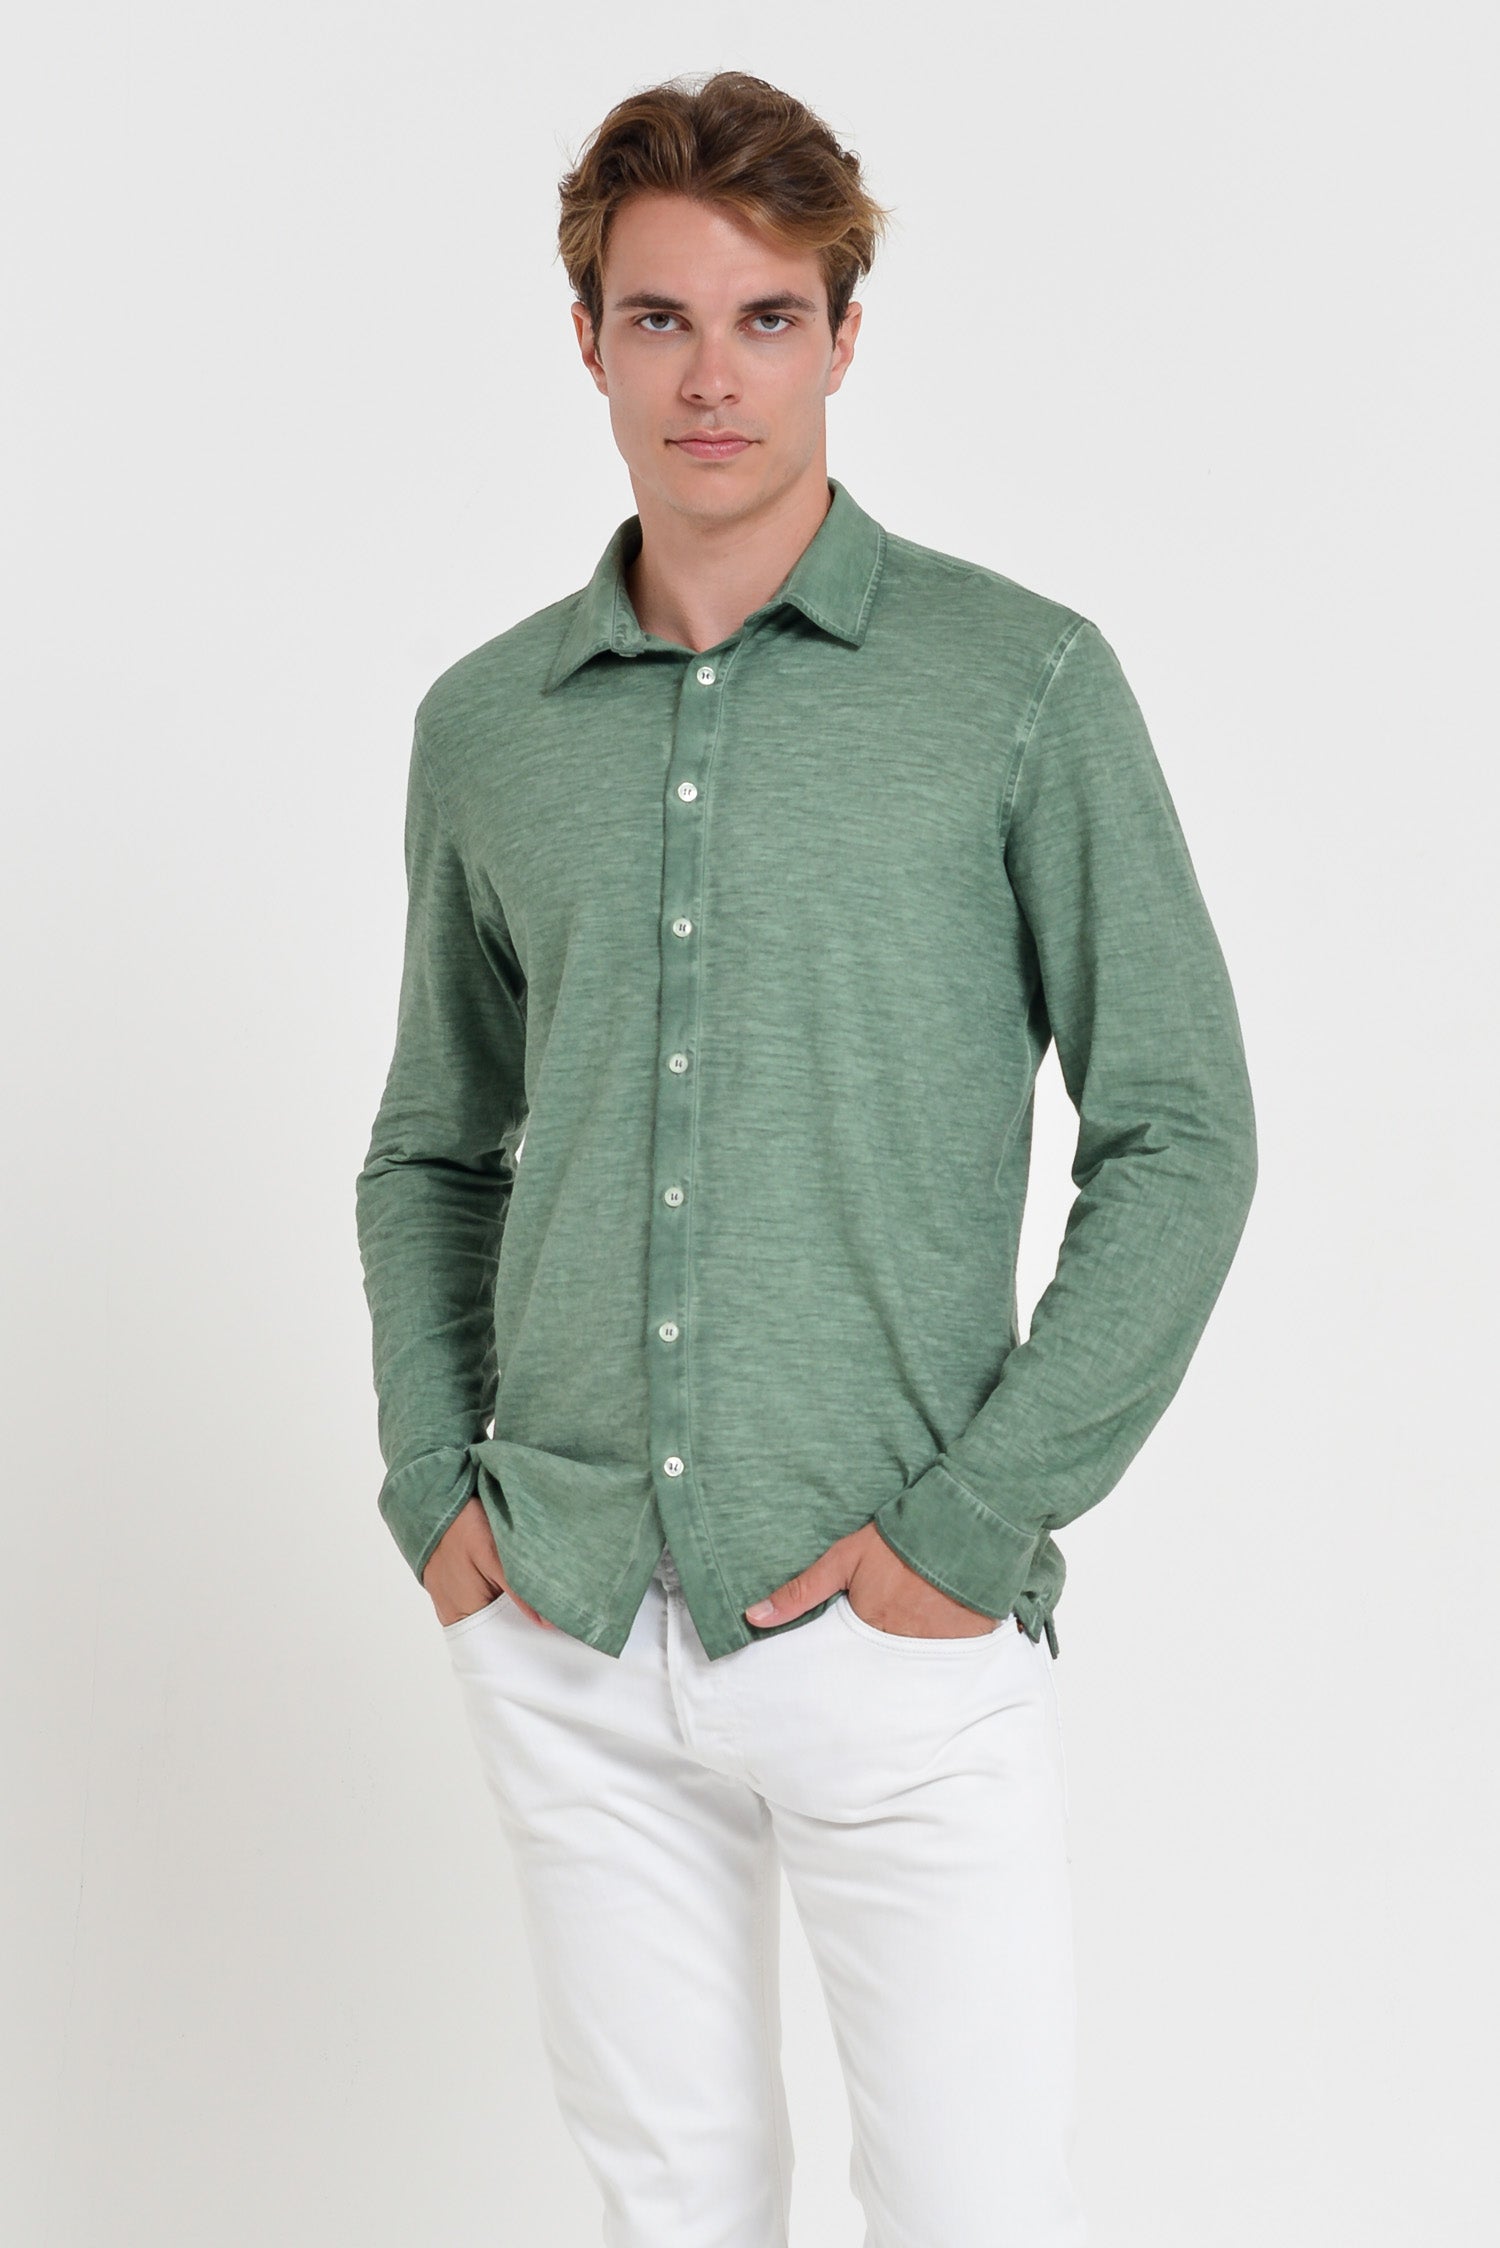 Garda Shirt - Men's Regular Fit Cotton Shirt - Juniper